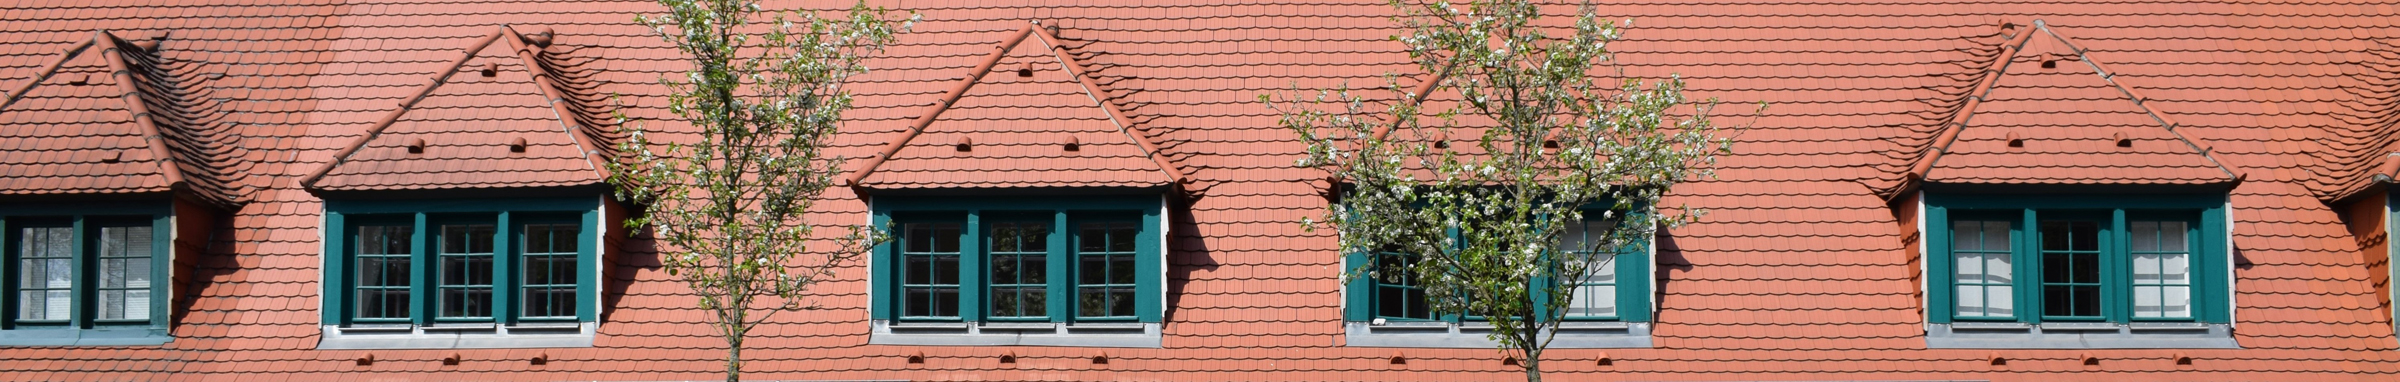 Dachlandschaft von Riemerschmidhäusern in Hellerau